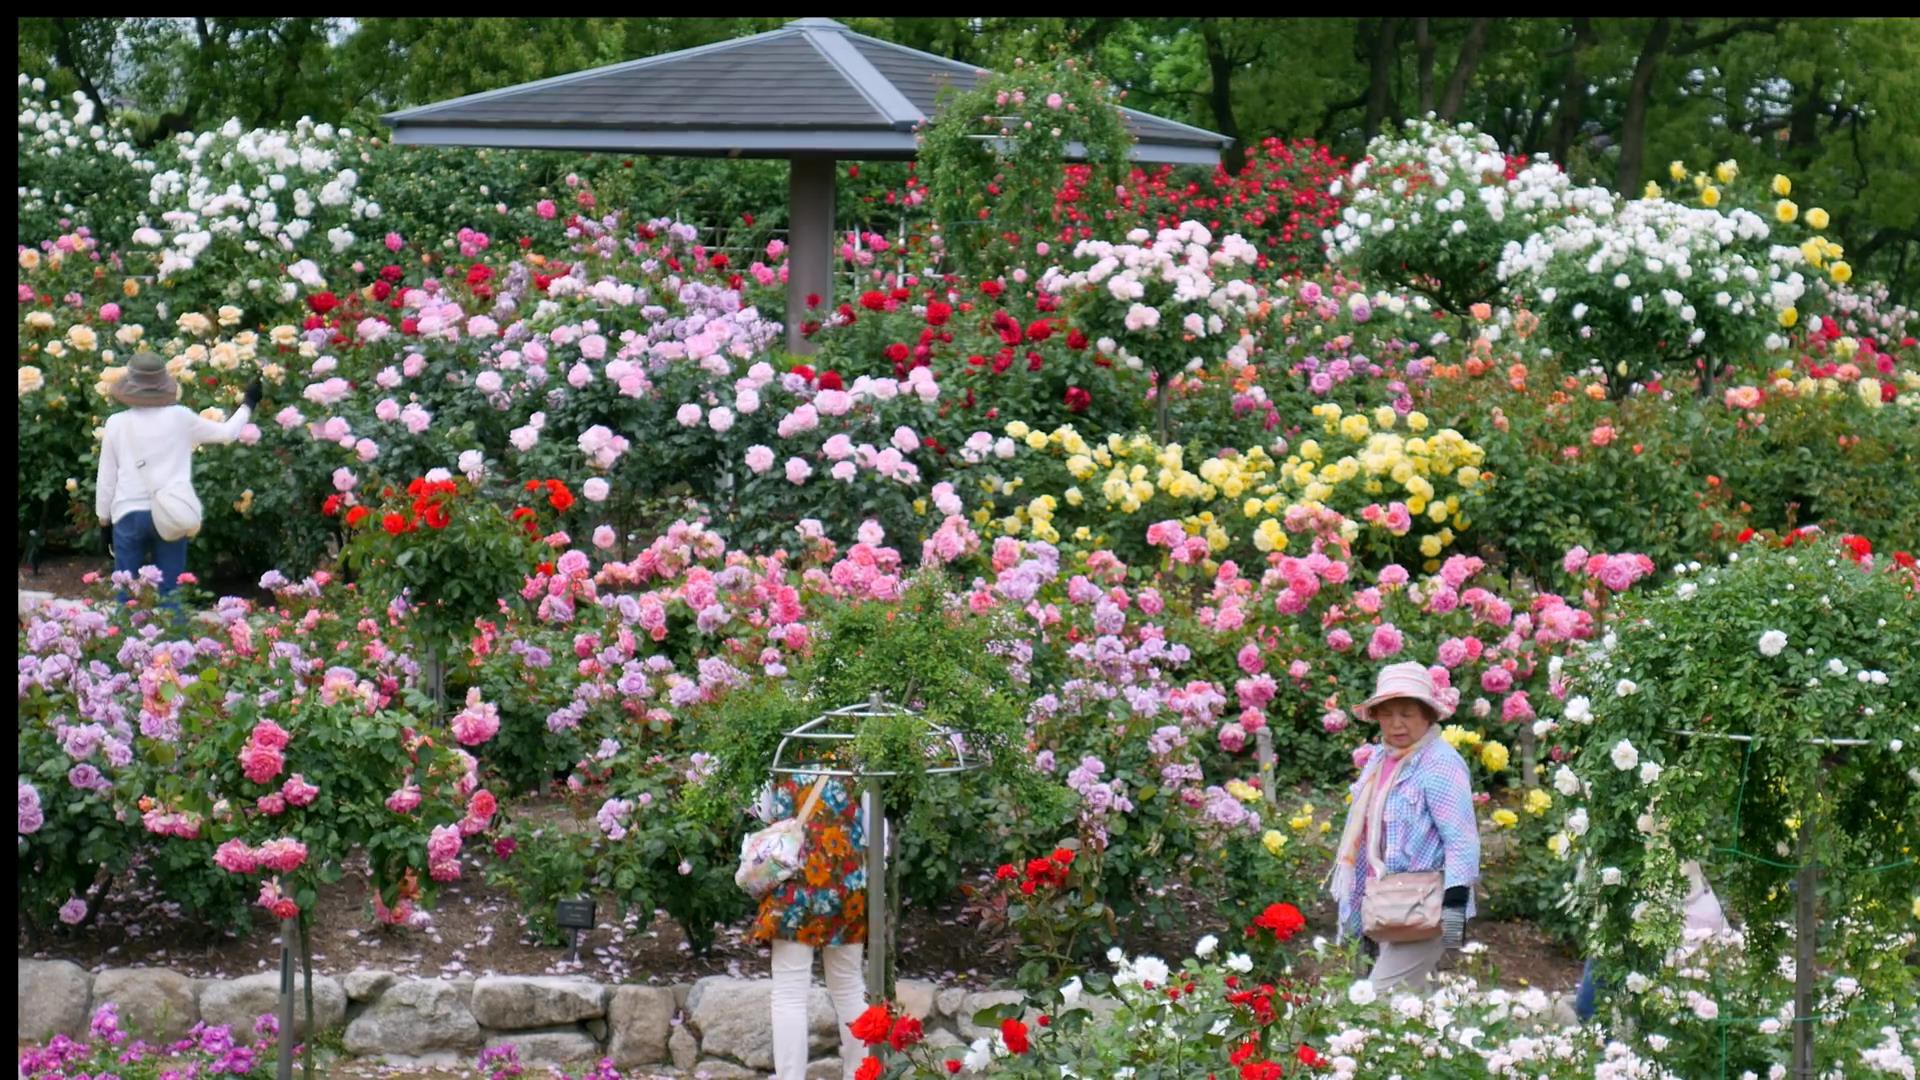 Đến thăm khu vườn trên đảo ở Nhật Bản với 2.600 cây hoa hồng rung rinh trước gió đẹp mê mẩn lòng người - Ảnh 11.